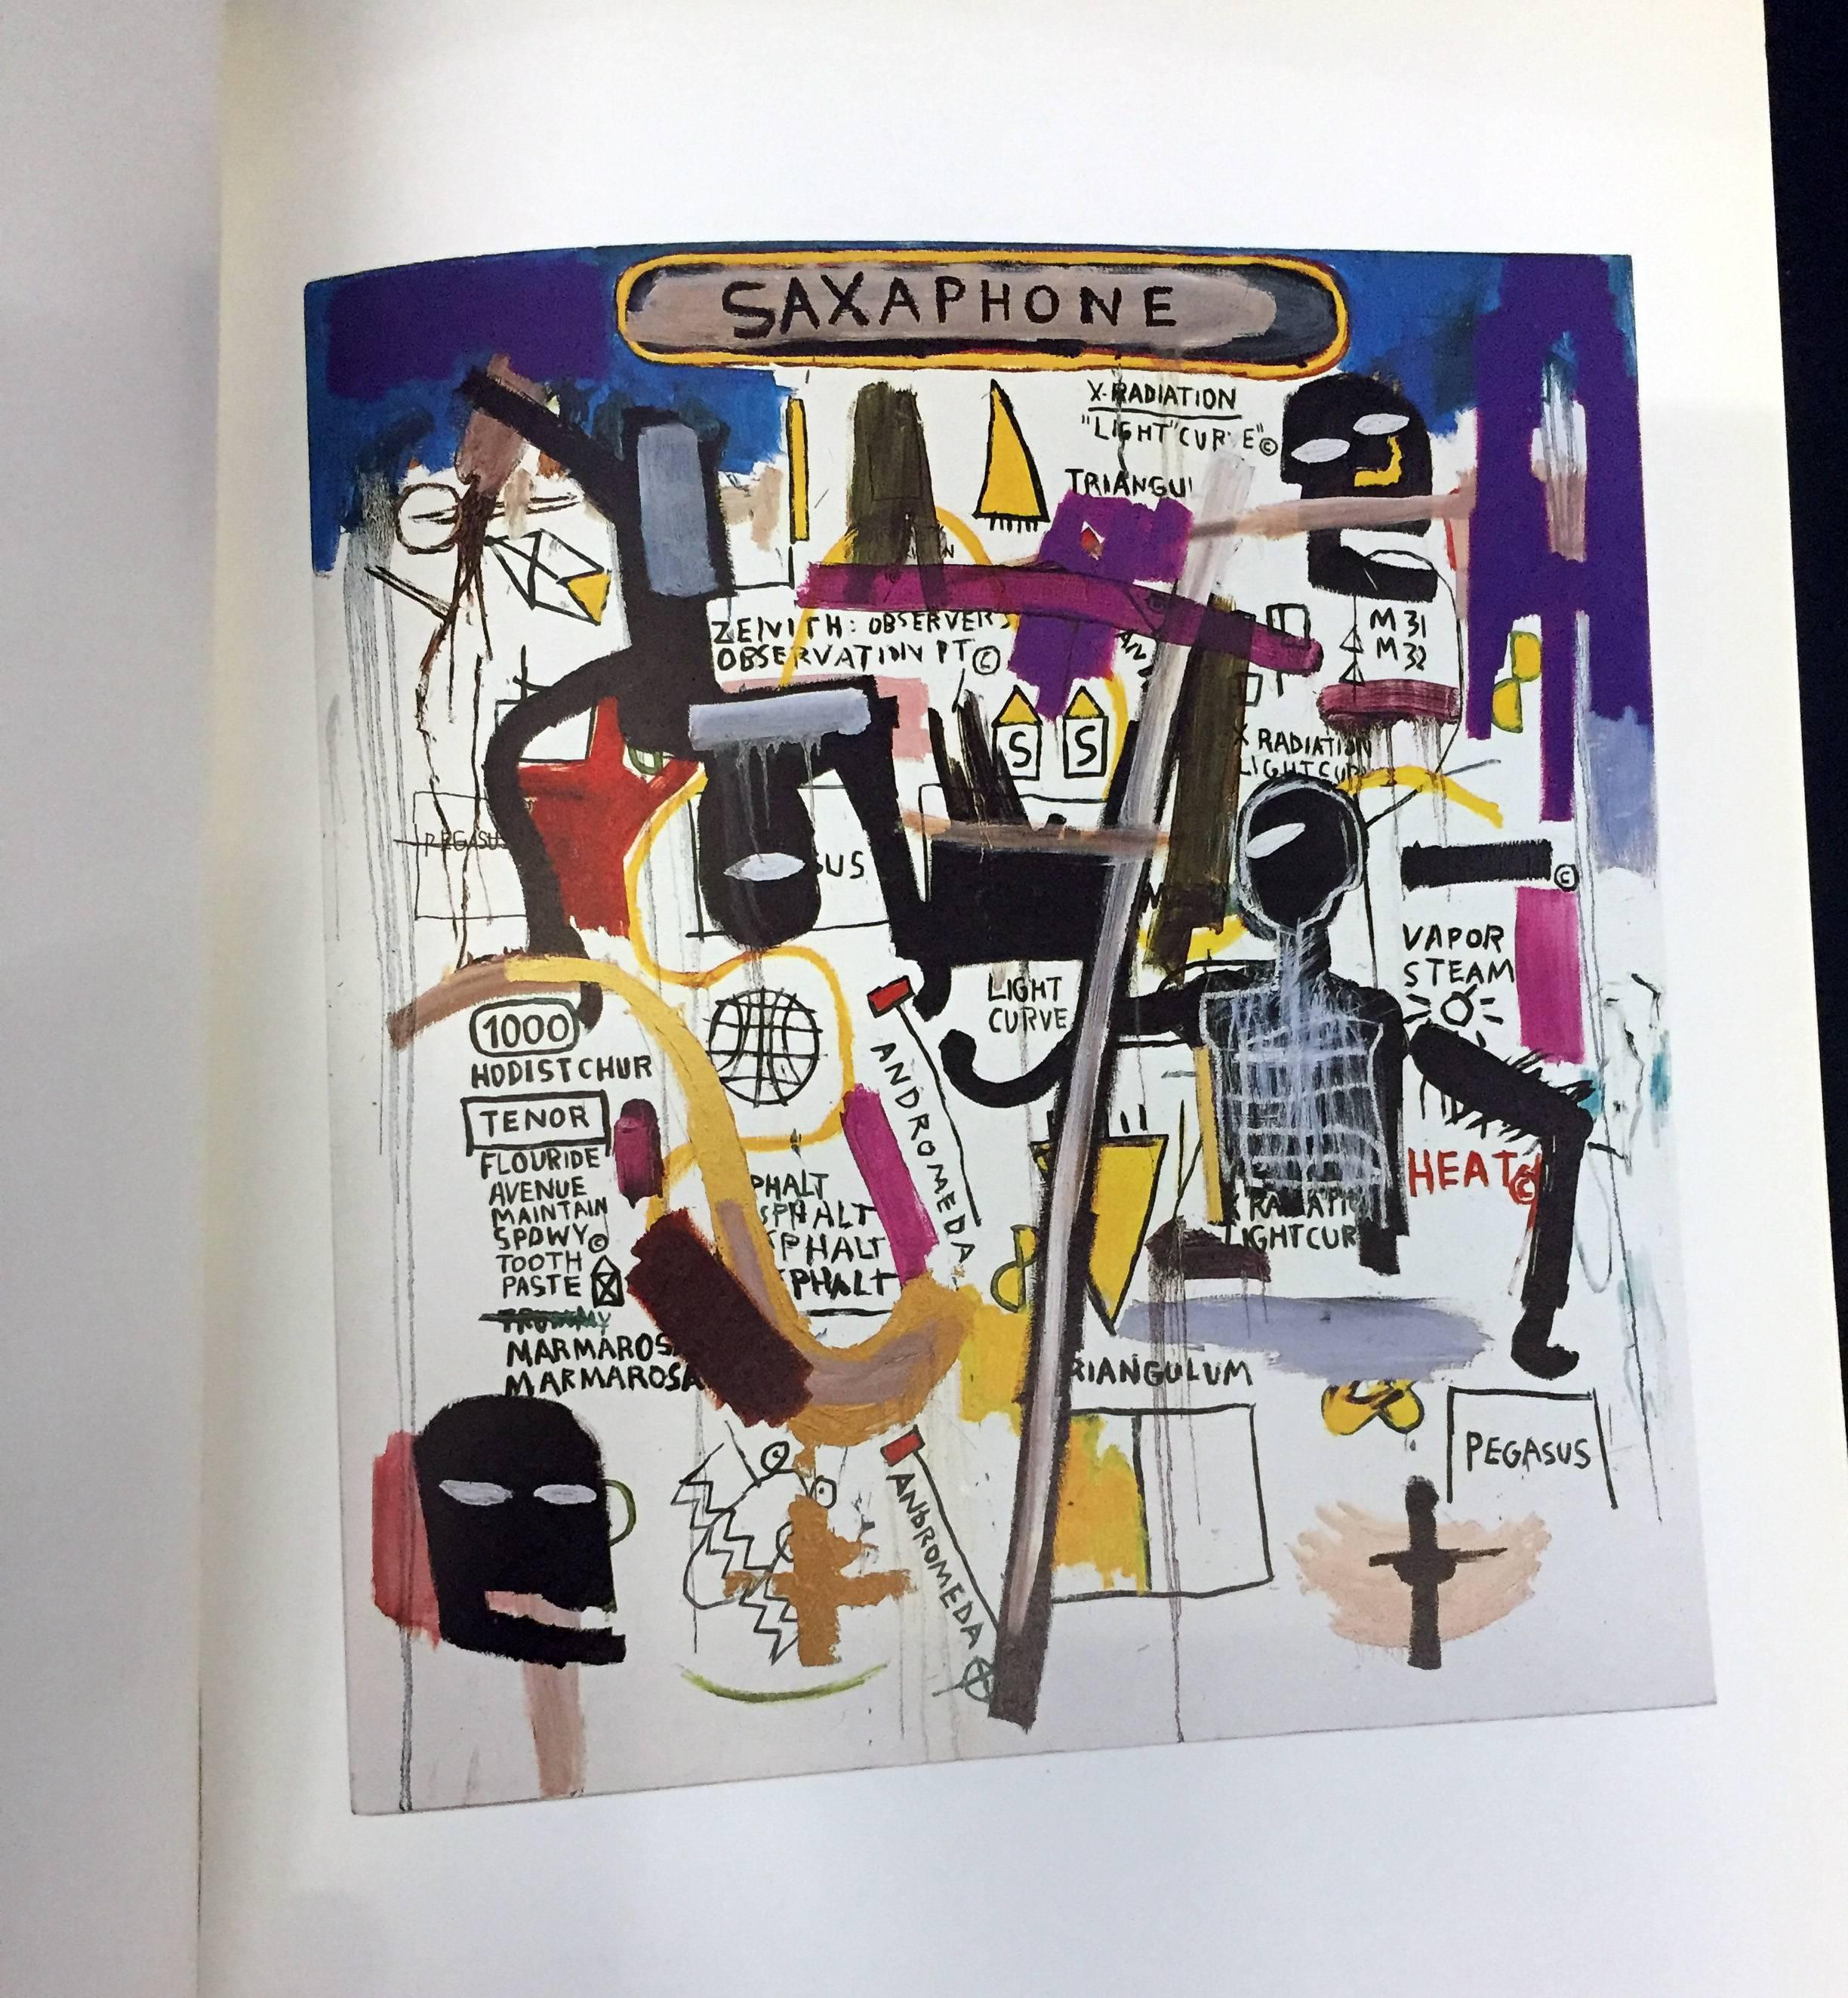 Basquiat at Galerie Thaddaeus Ropac, 1986 exhibition catalog / Jean-Michel Basquiat: Bilder 1984–1986:
